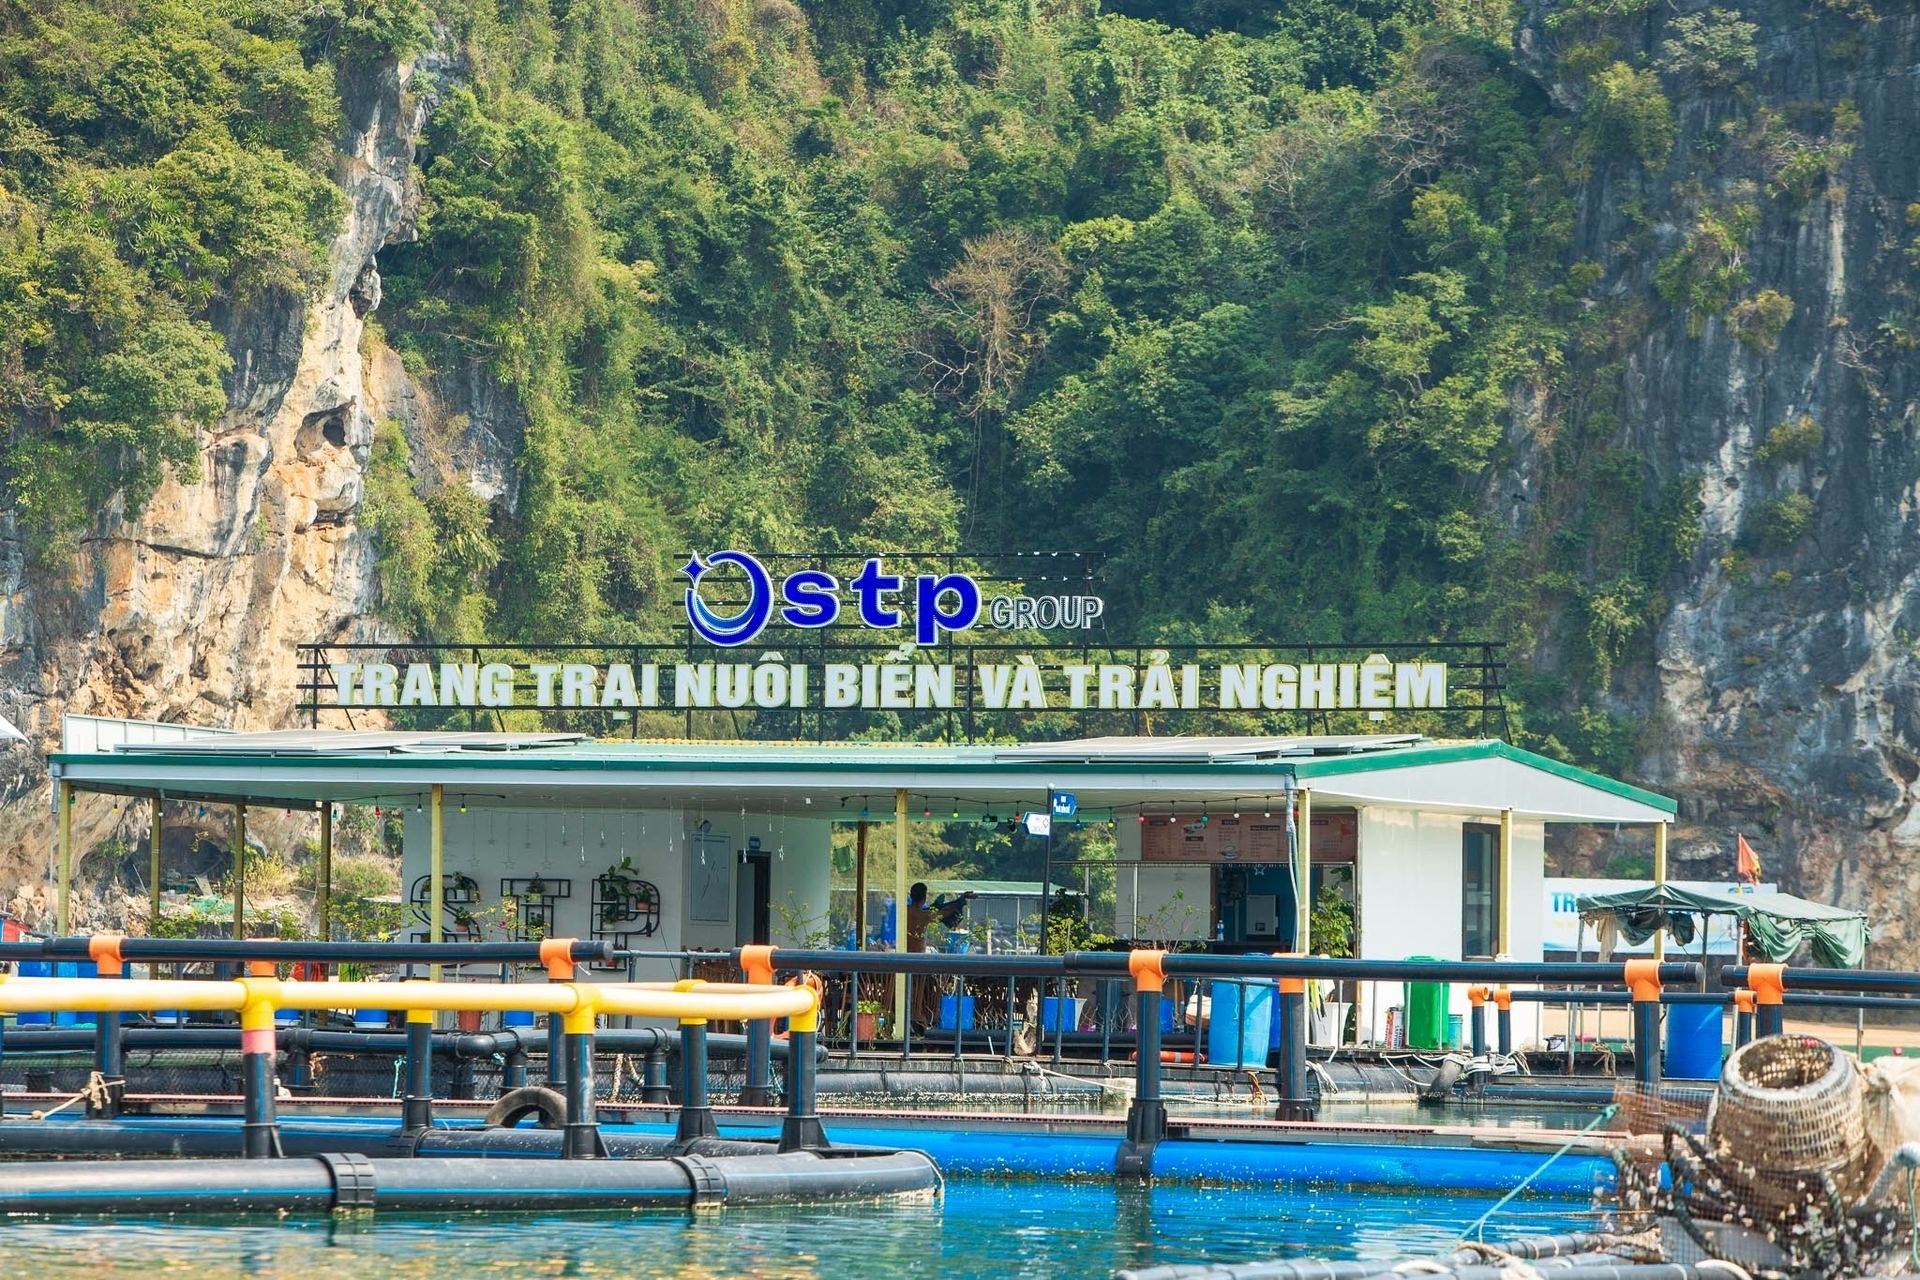 Khu nuôi biển sử dụng vật liệu nổi HDPE. Ảnh: Văn Nguyễn.